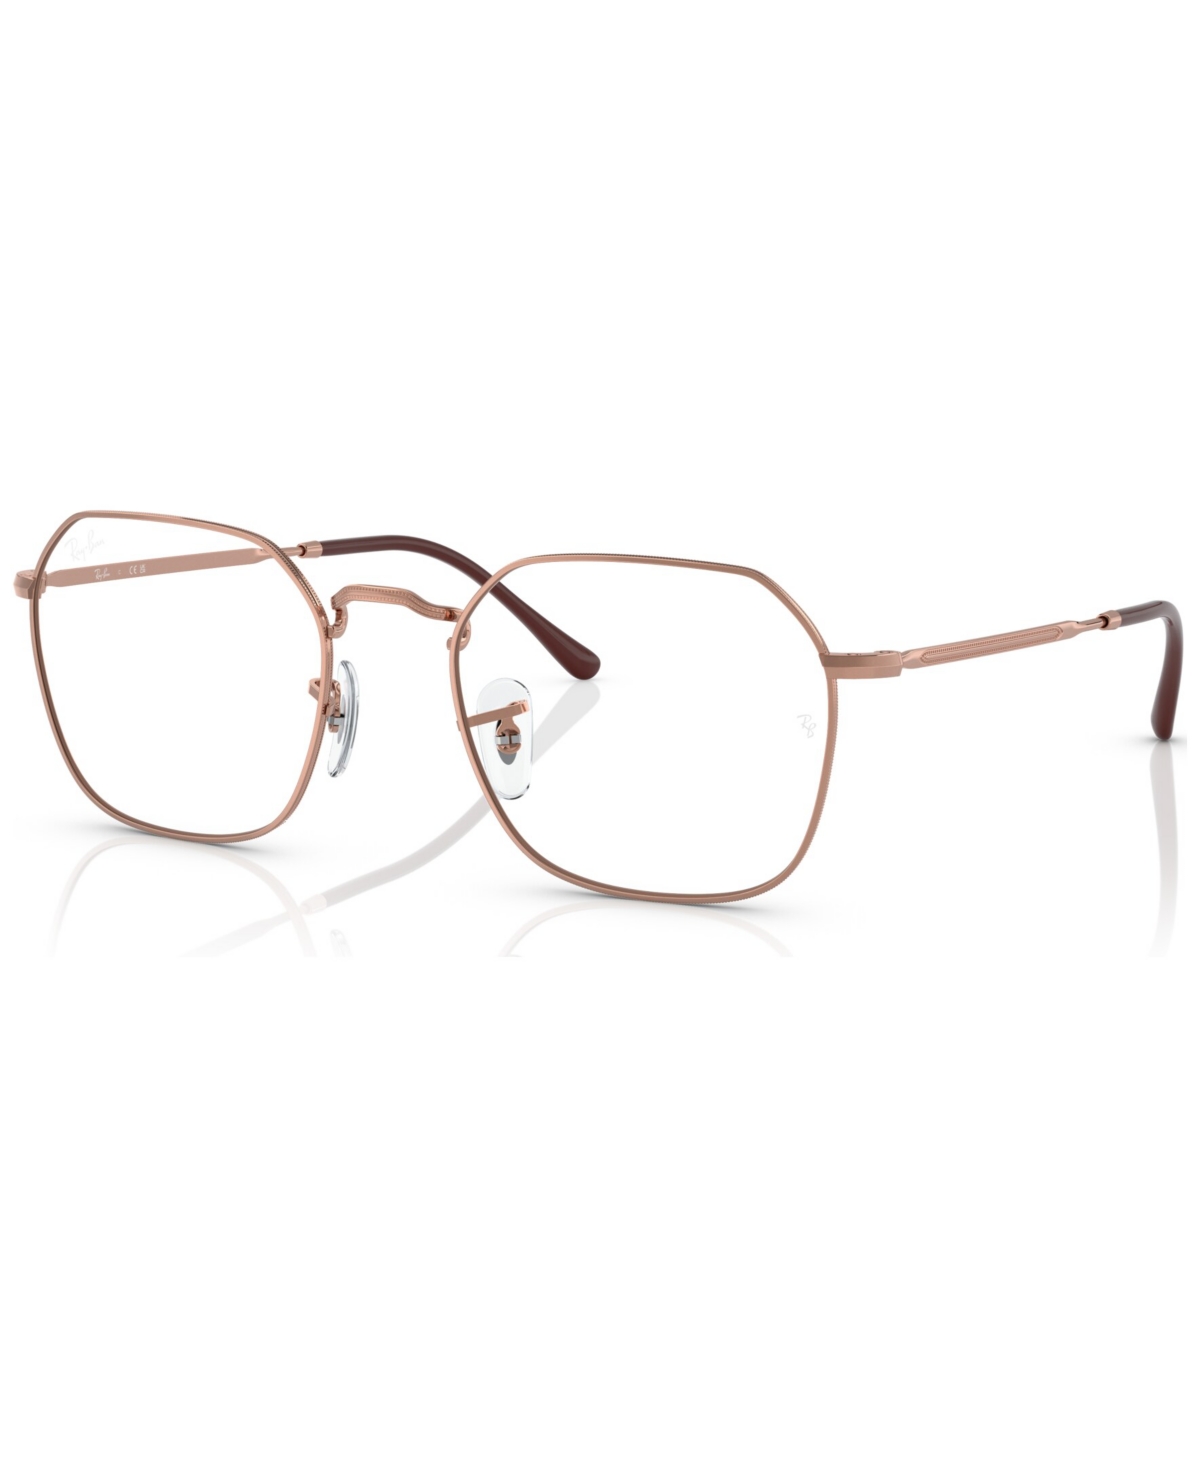 Unisex Irregular Eyeglasses, RX3694V53-o - Rose Gold Tone